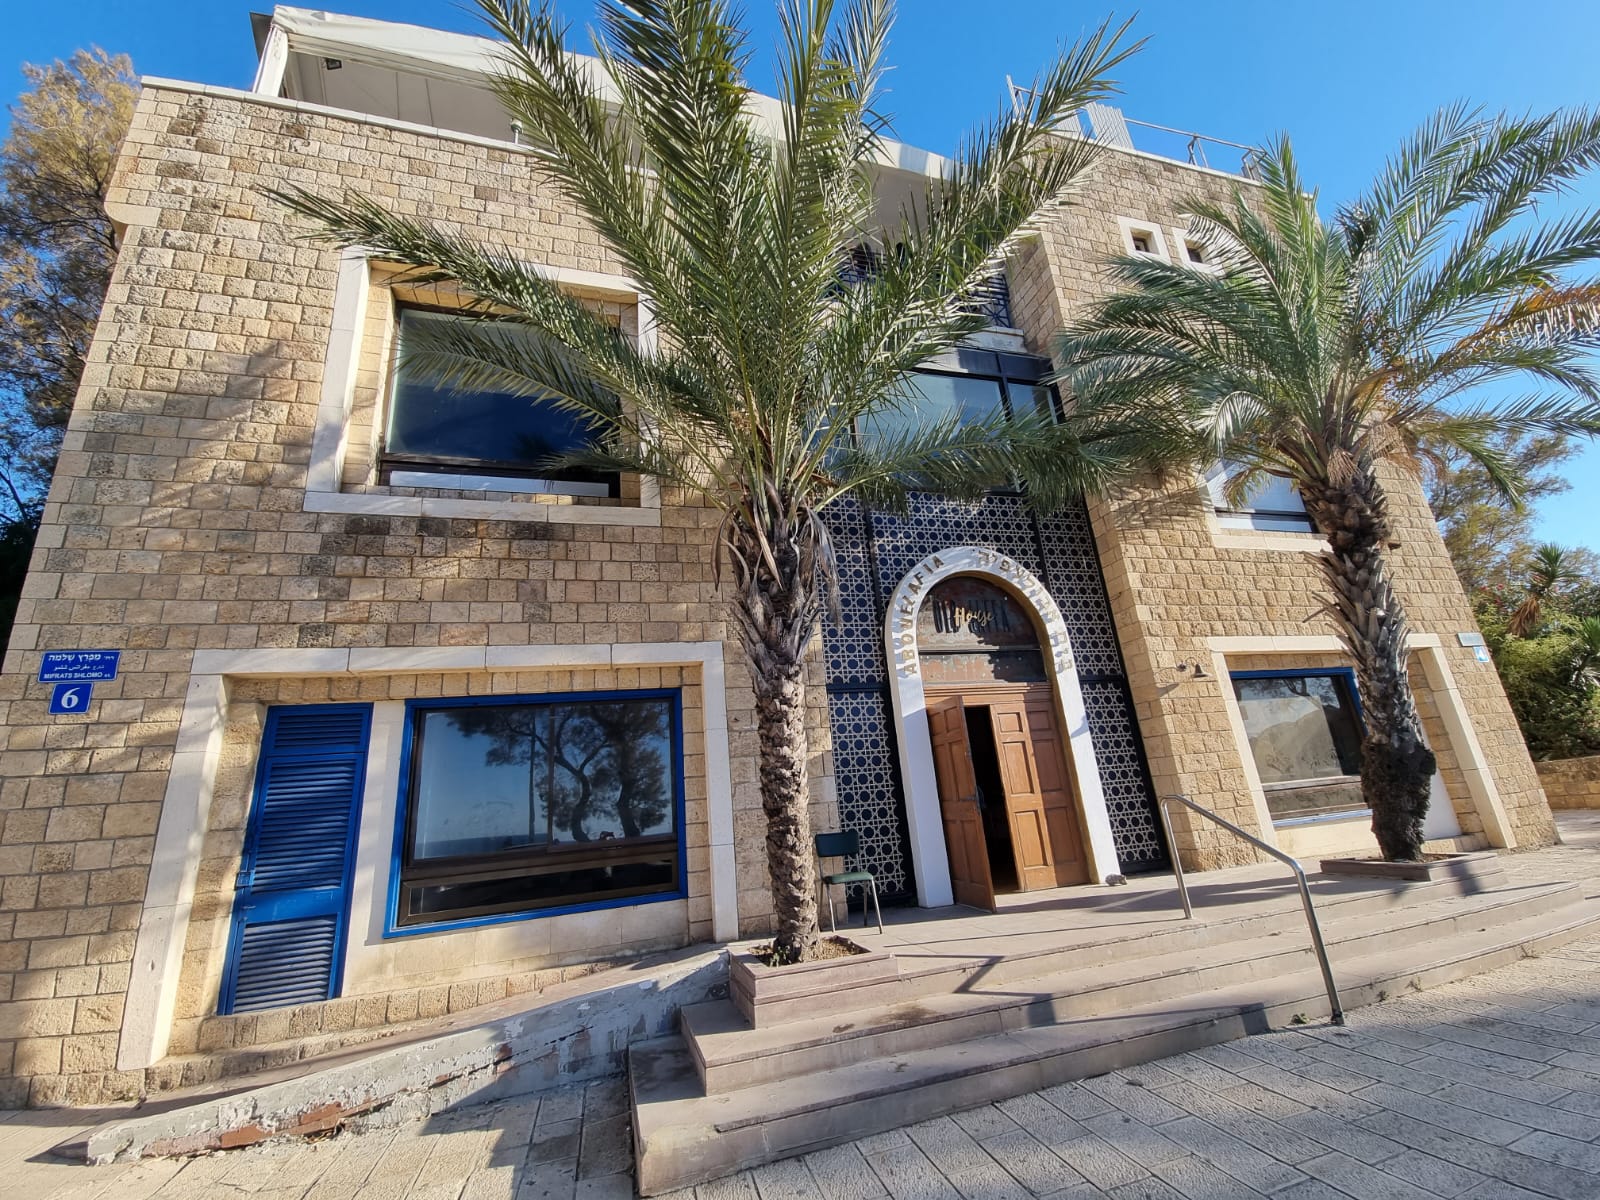 בתל אביב- גם בתי ספר עוברים דירה